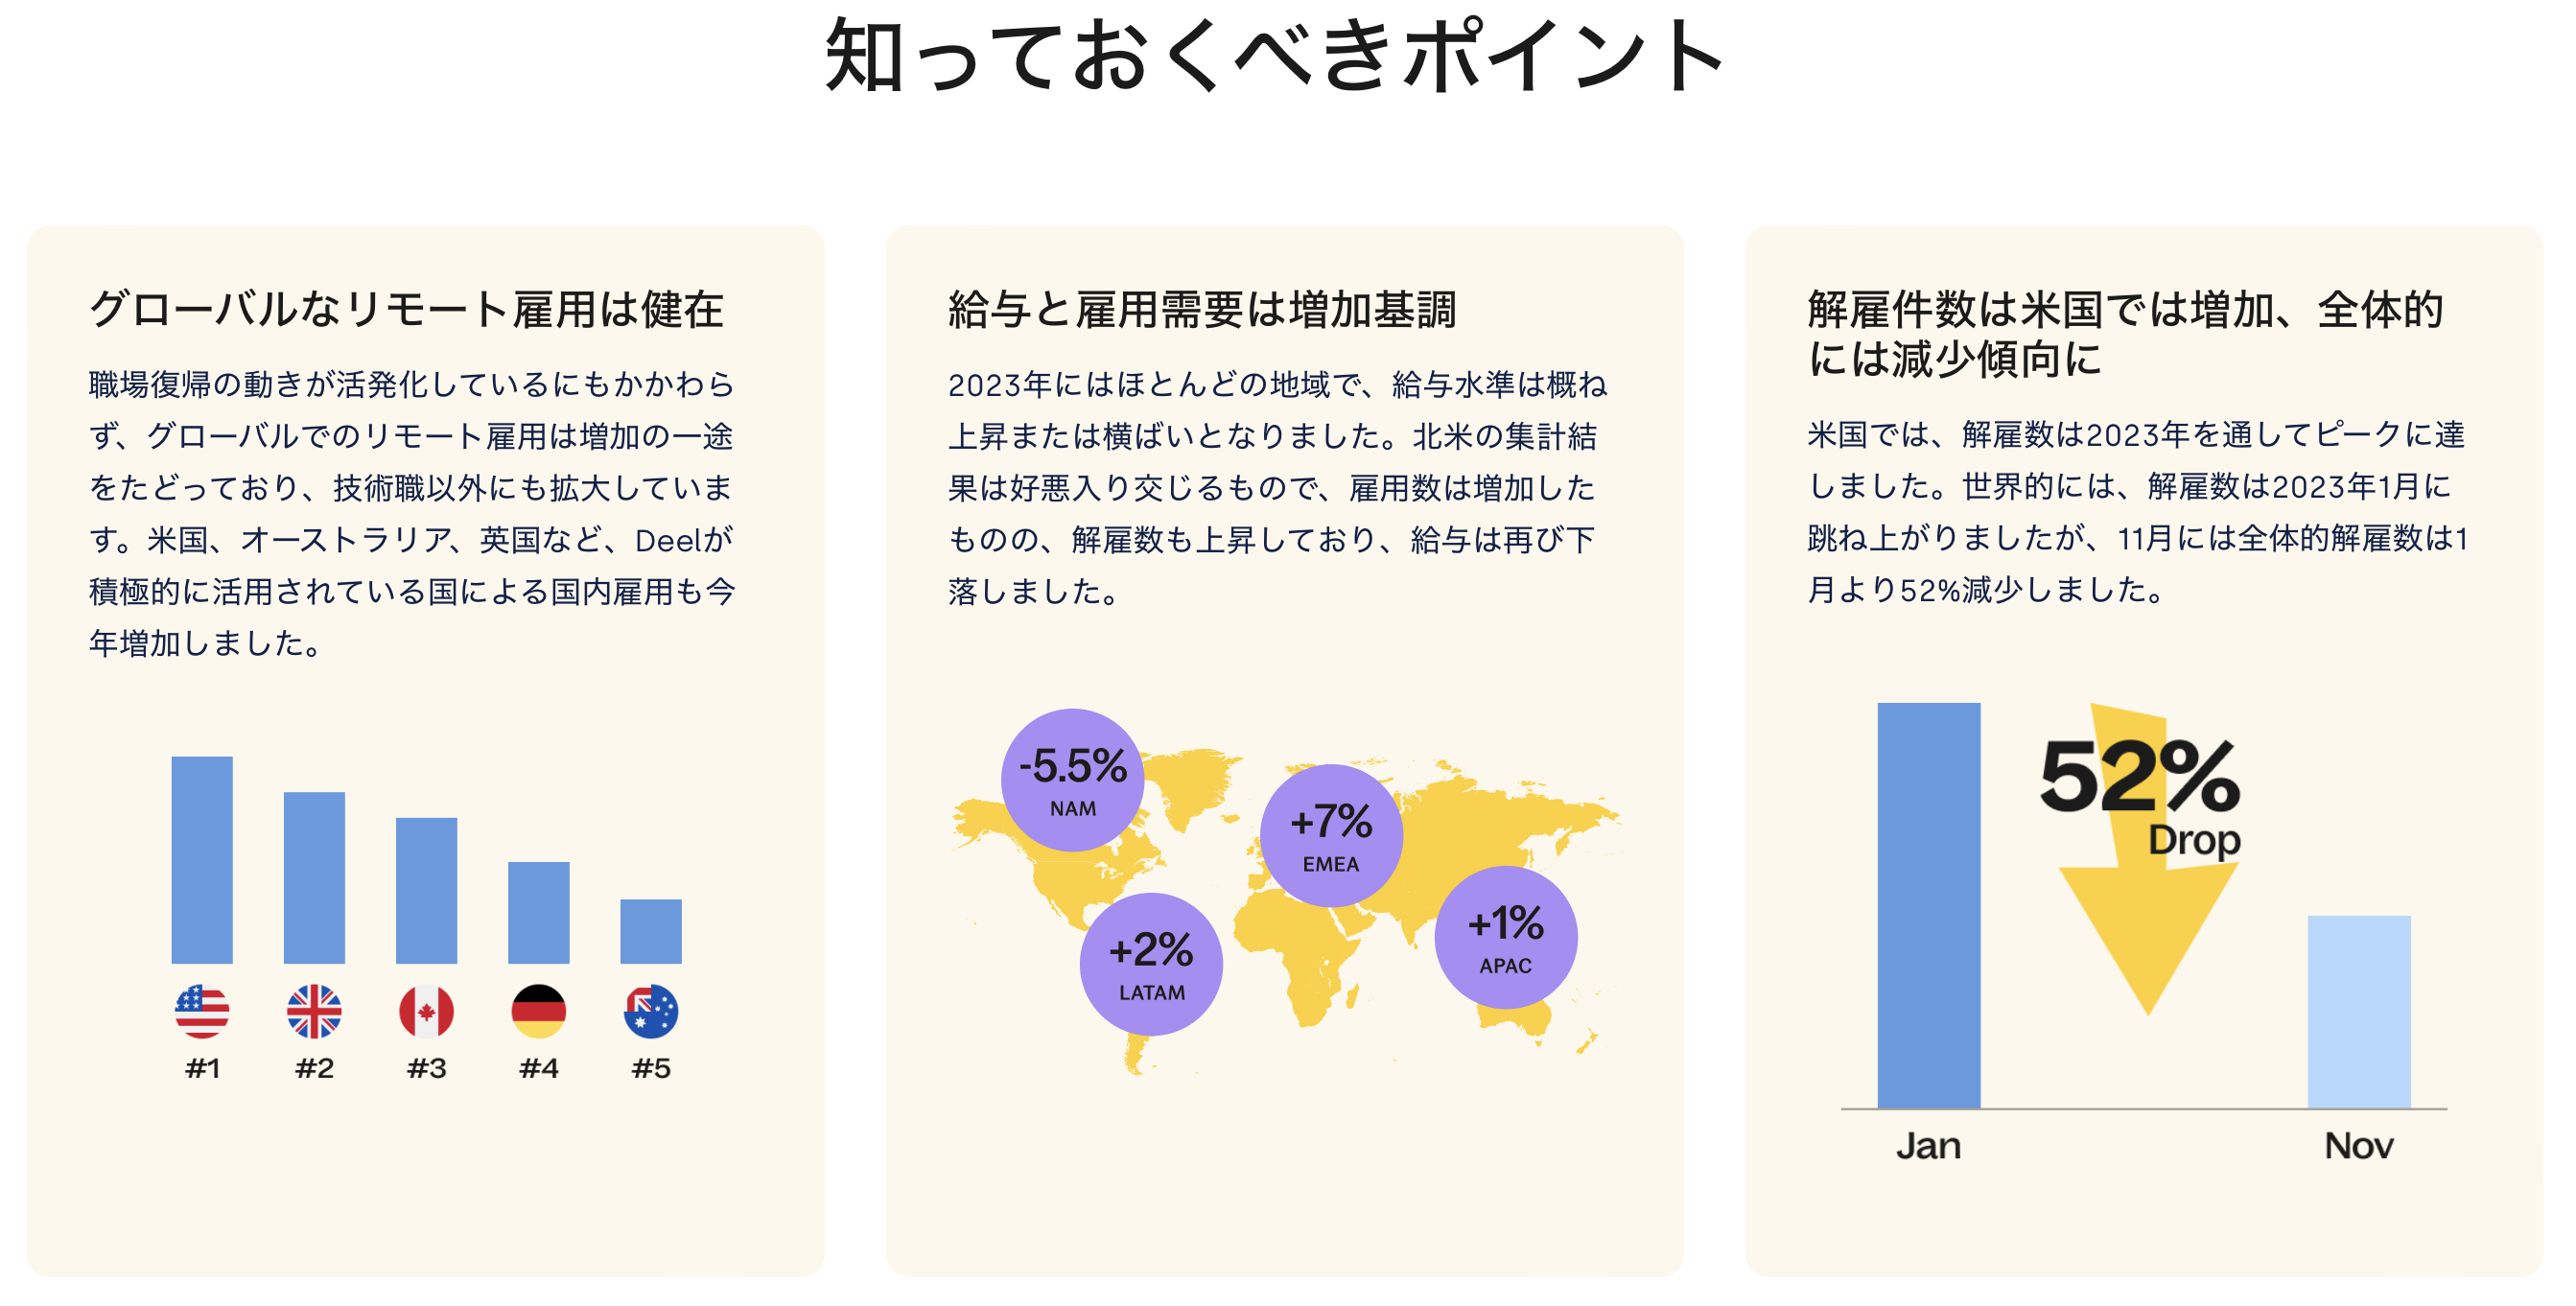 JP State of Global Hiring Report snapshot